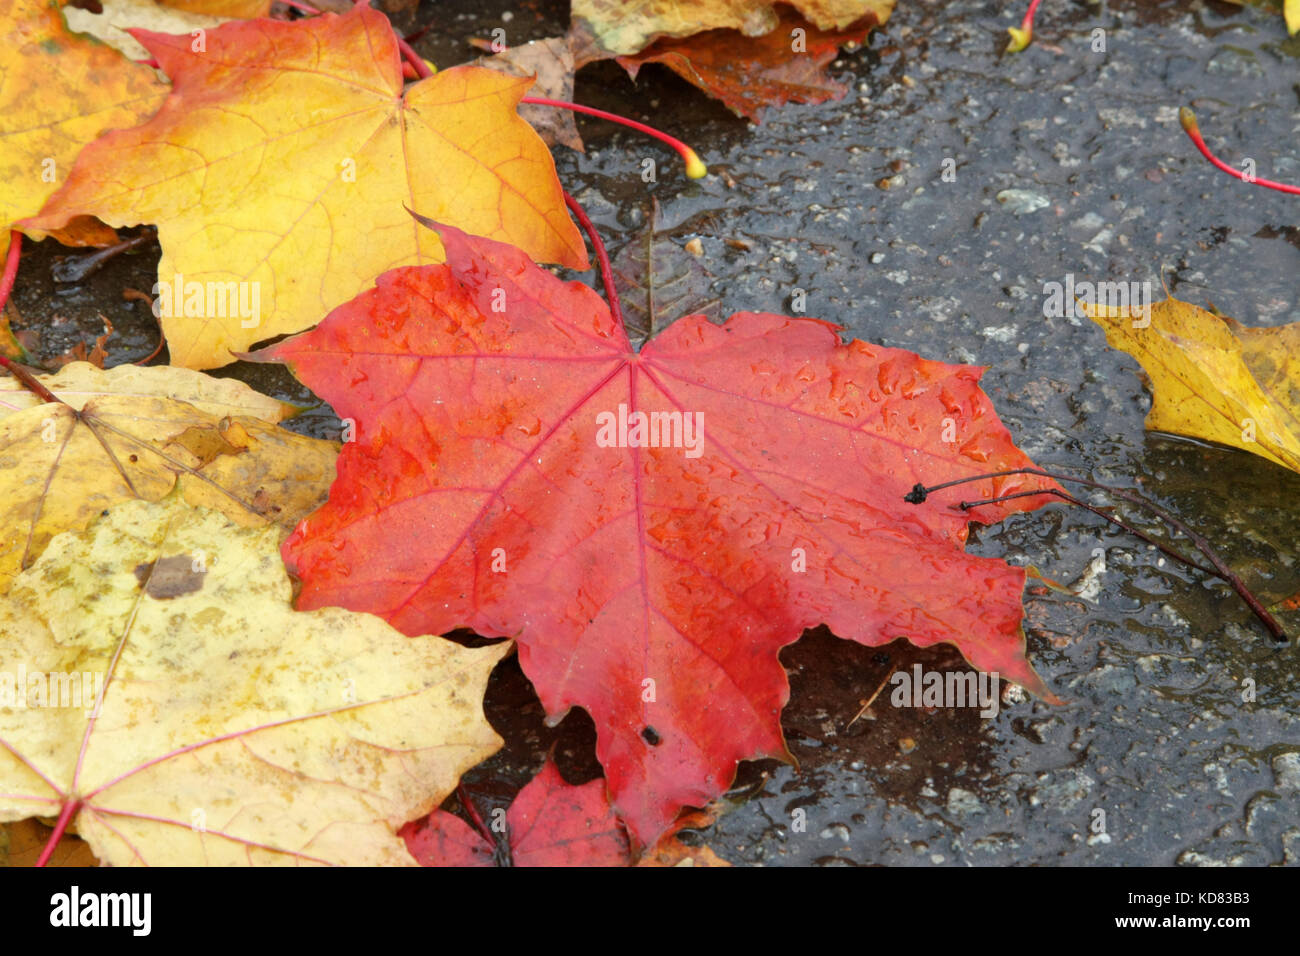 Herbstliche Stimmung. Helles ahorn Blätter auf dem Pflaster liegen. die Blätter fallen. Stockfoto